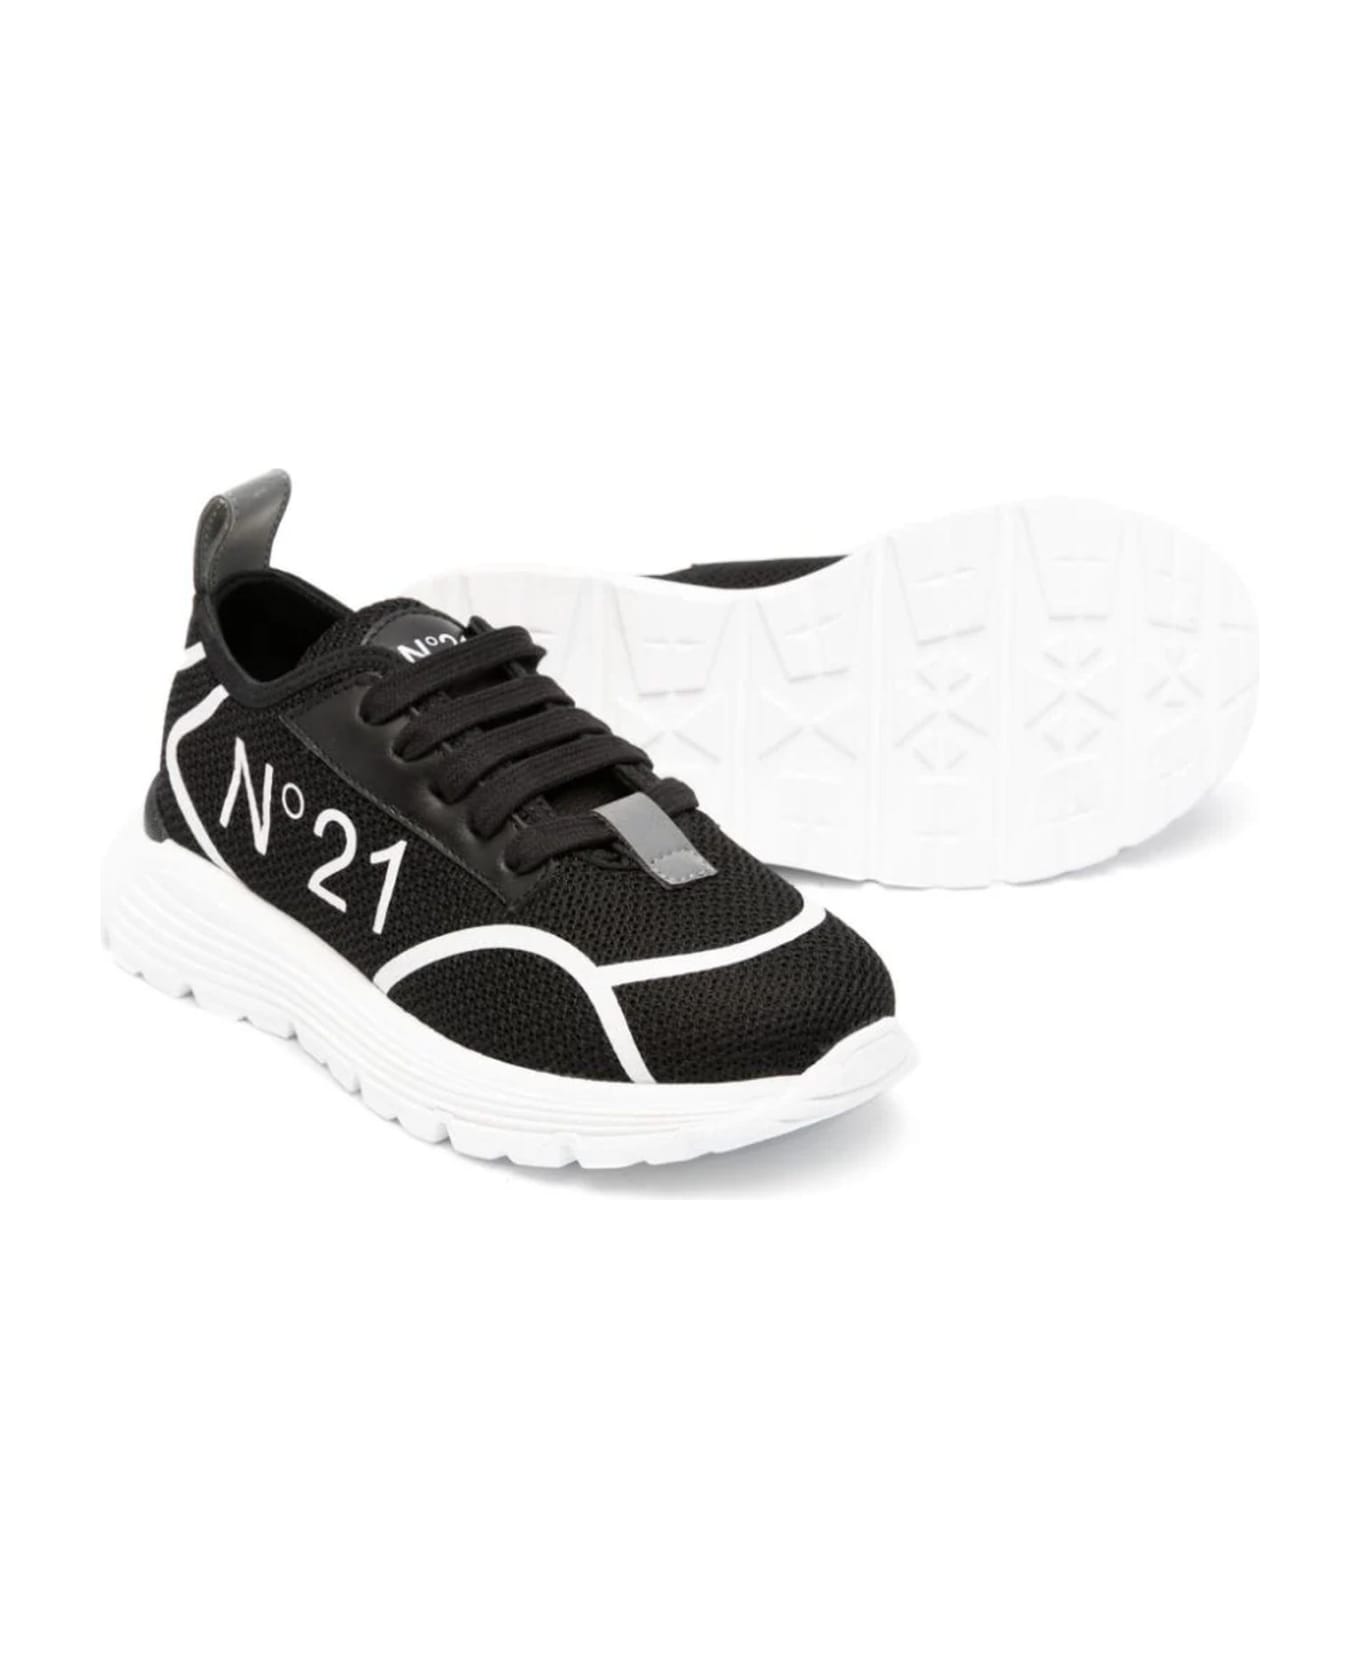 N.21 N°21 Sneakers Black - Black